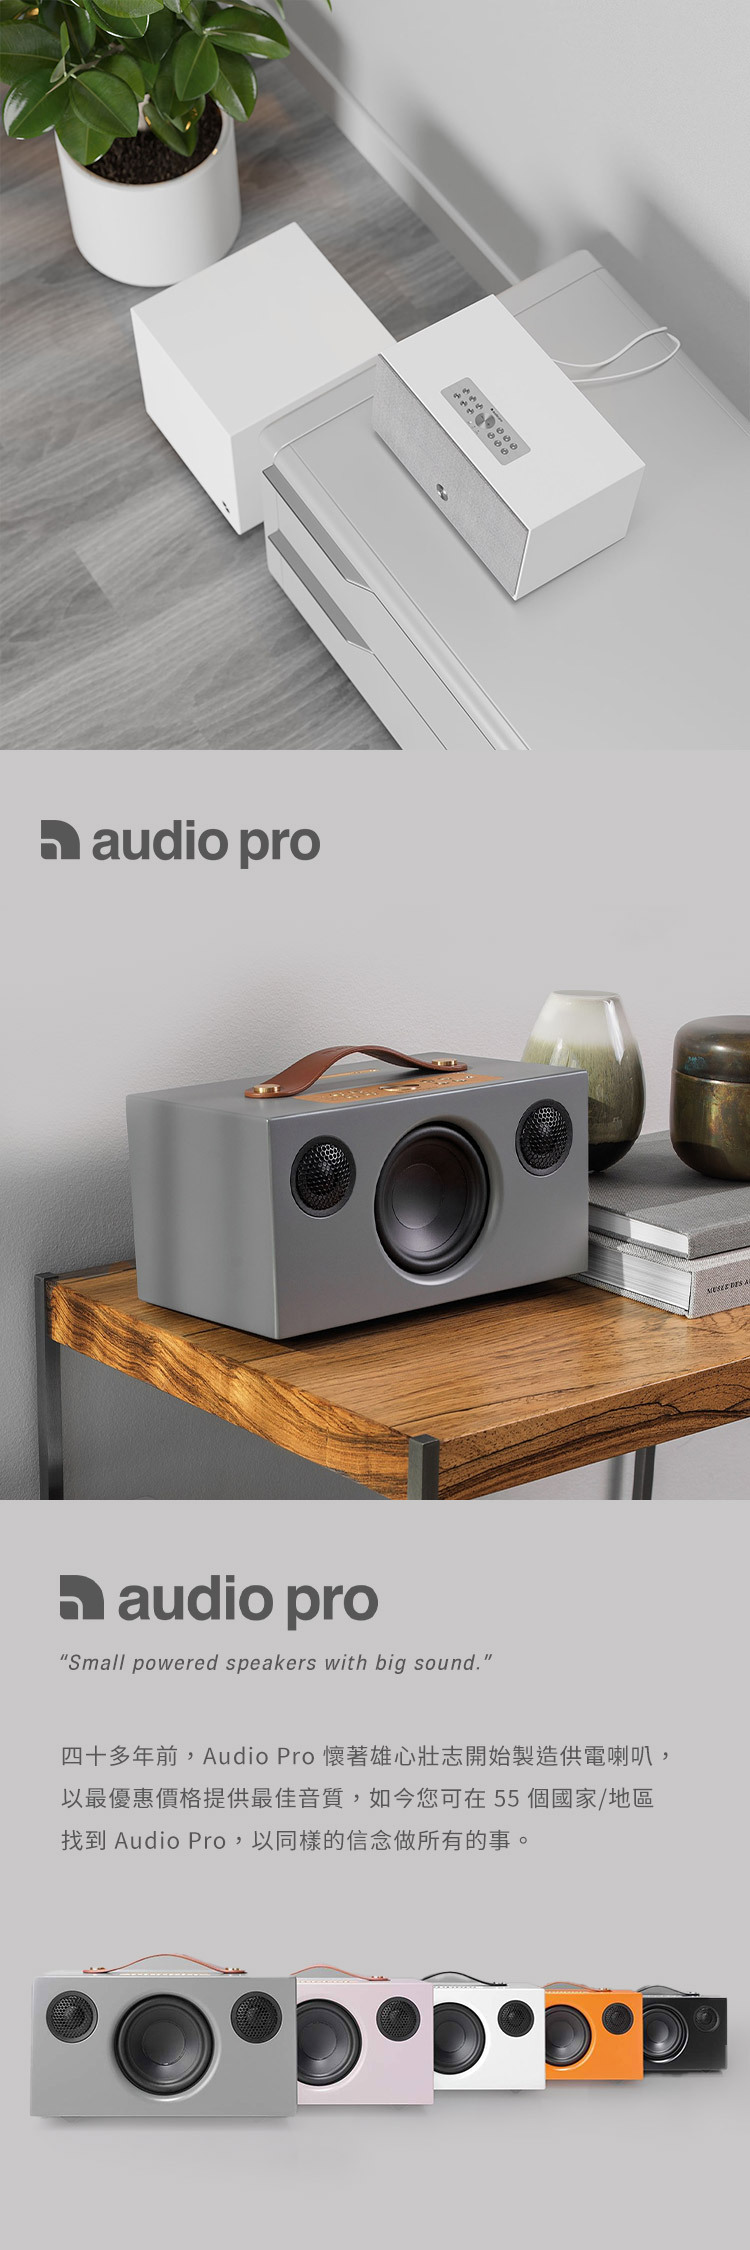 audio proaudio proSmall powered speakers with big sound.四十多年前,Audio Pro 懷著雄心壯志開始製造供電喇叭,以最優惠價格提供最佳音質,如今您可在55 個國家/地區找到 Audio Pro,以同樣的信念做所有的事。